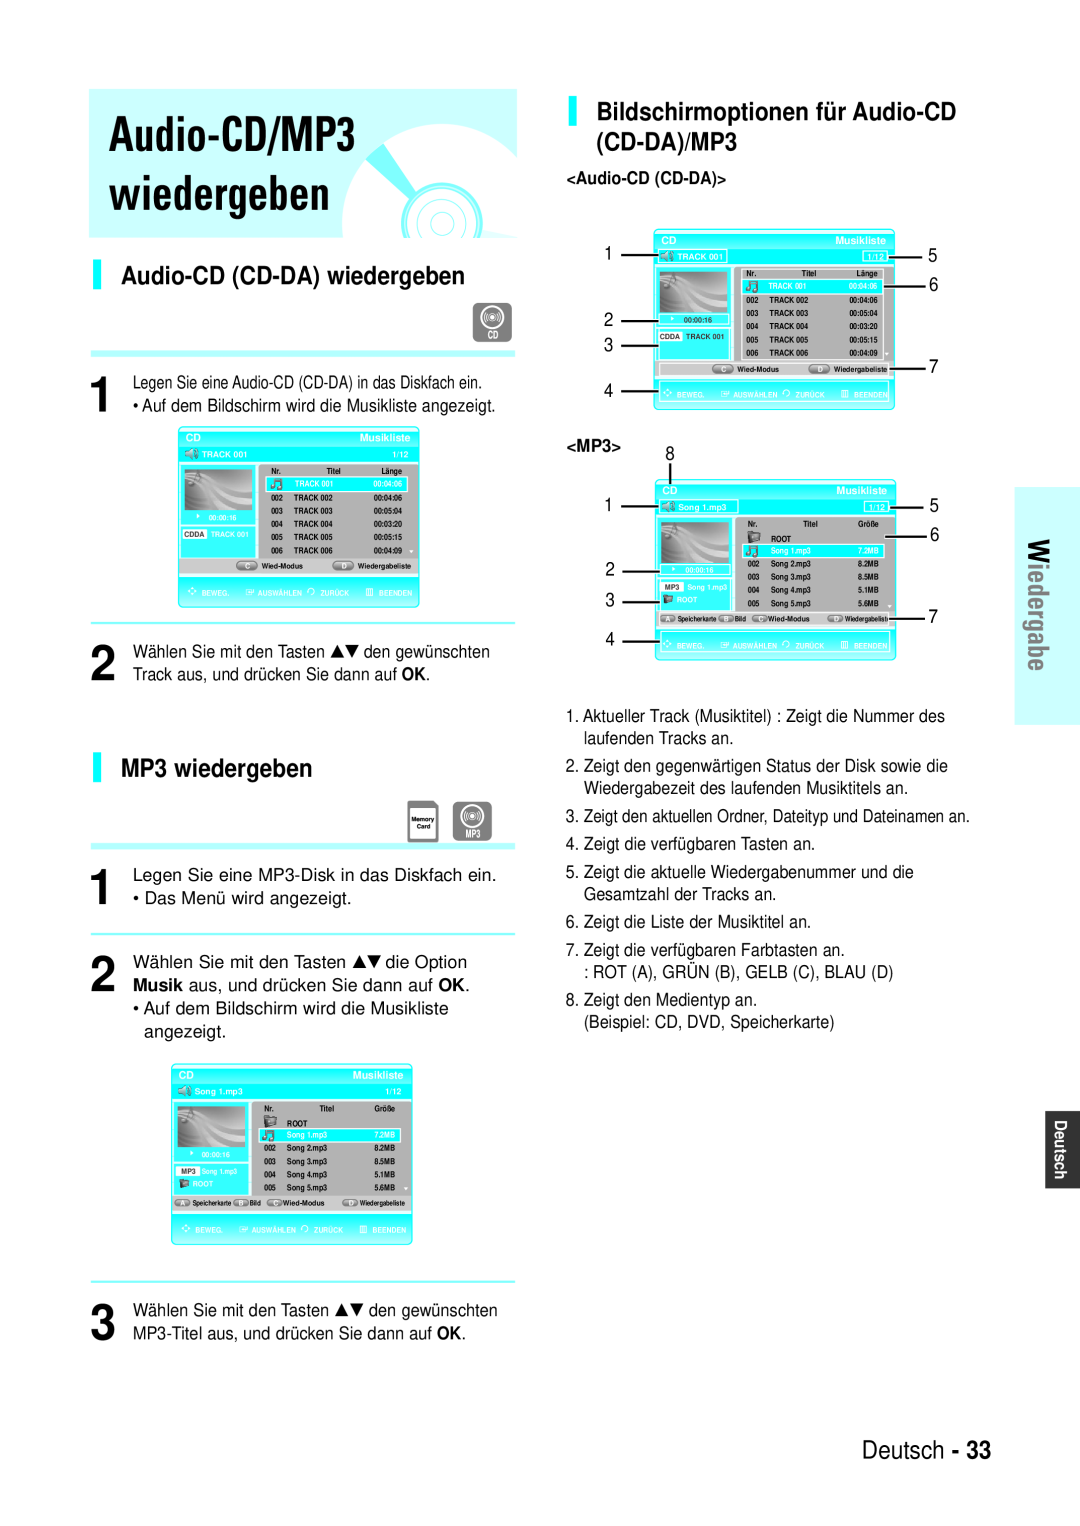 Samsung BD-P1000/XEN manual Audio-CD/MP3 wiedergeben, Audio-CD CD-DA wiedergeben, Bildschirmoptionen für Audio-CD CD-DA/MP3 